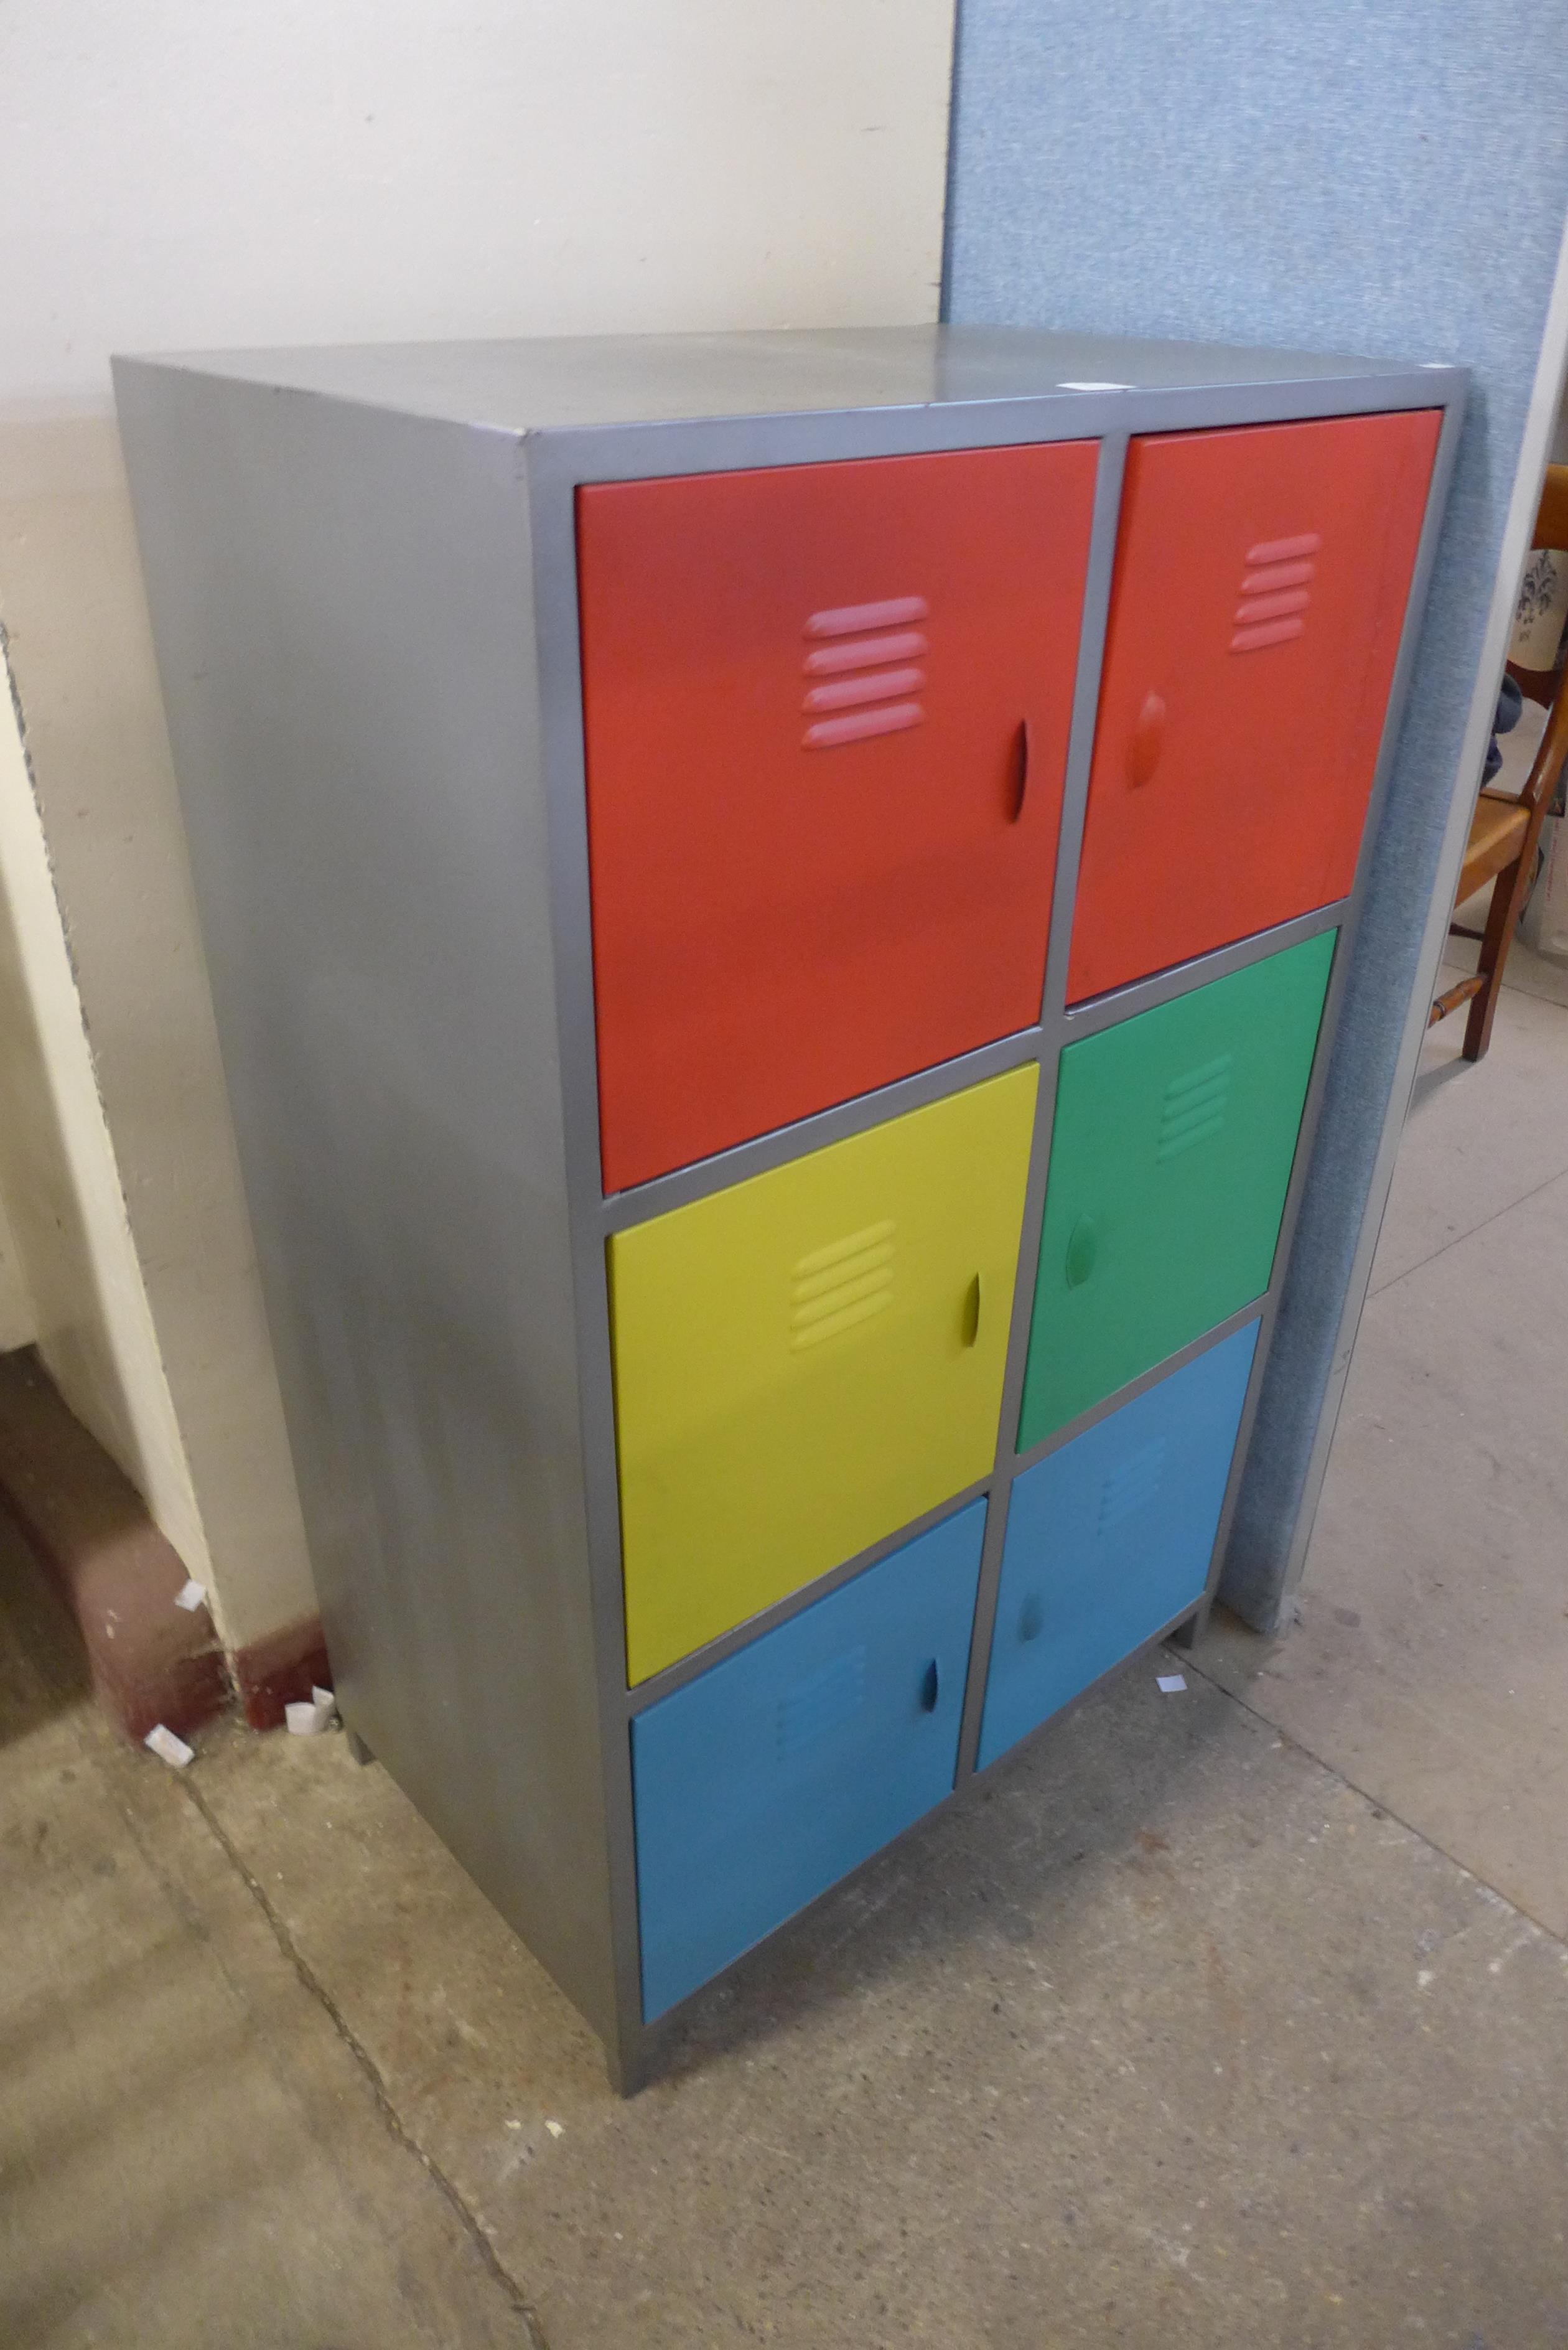 A painted metal locker